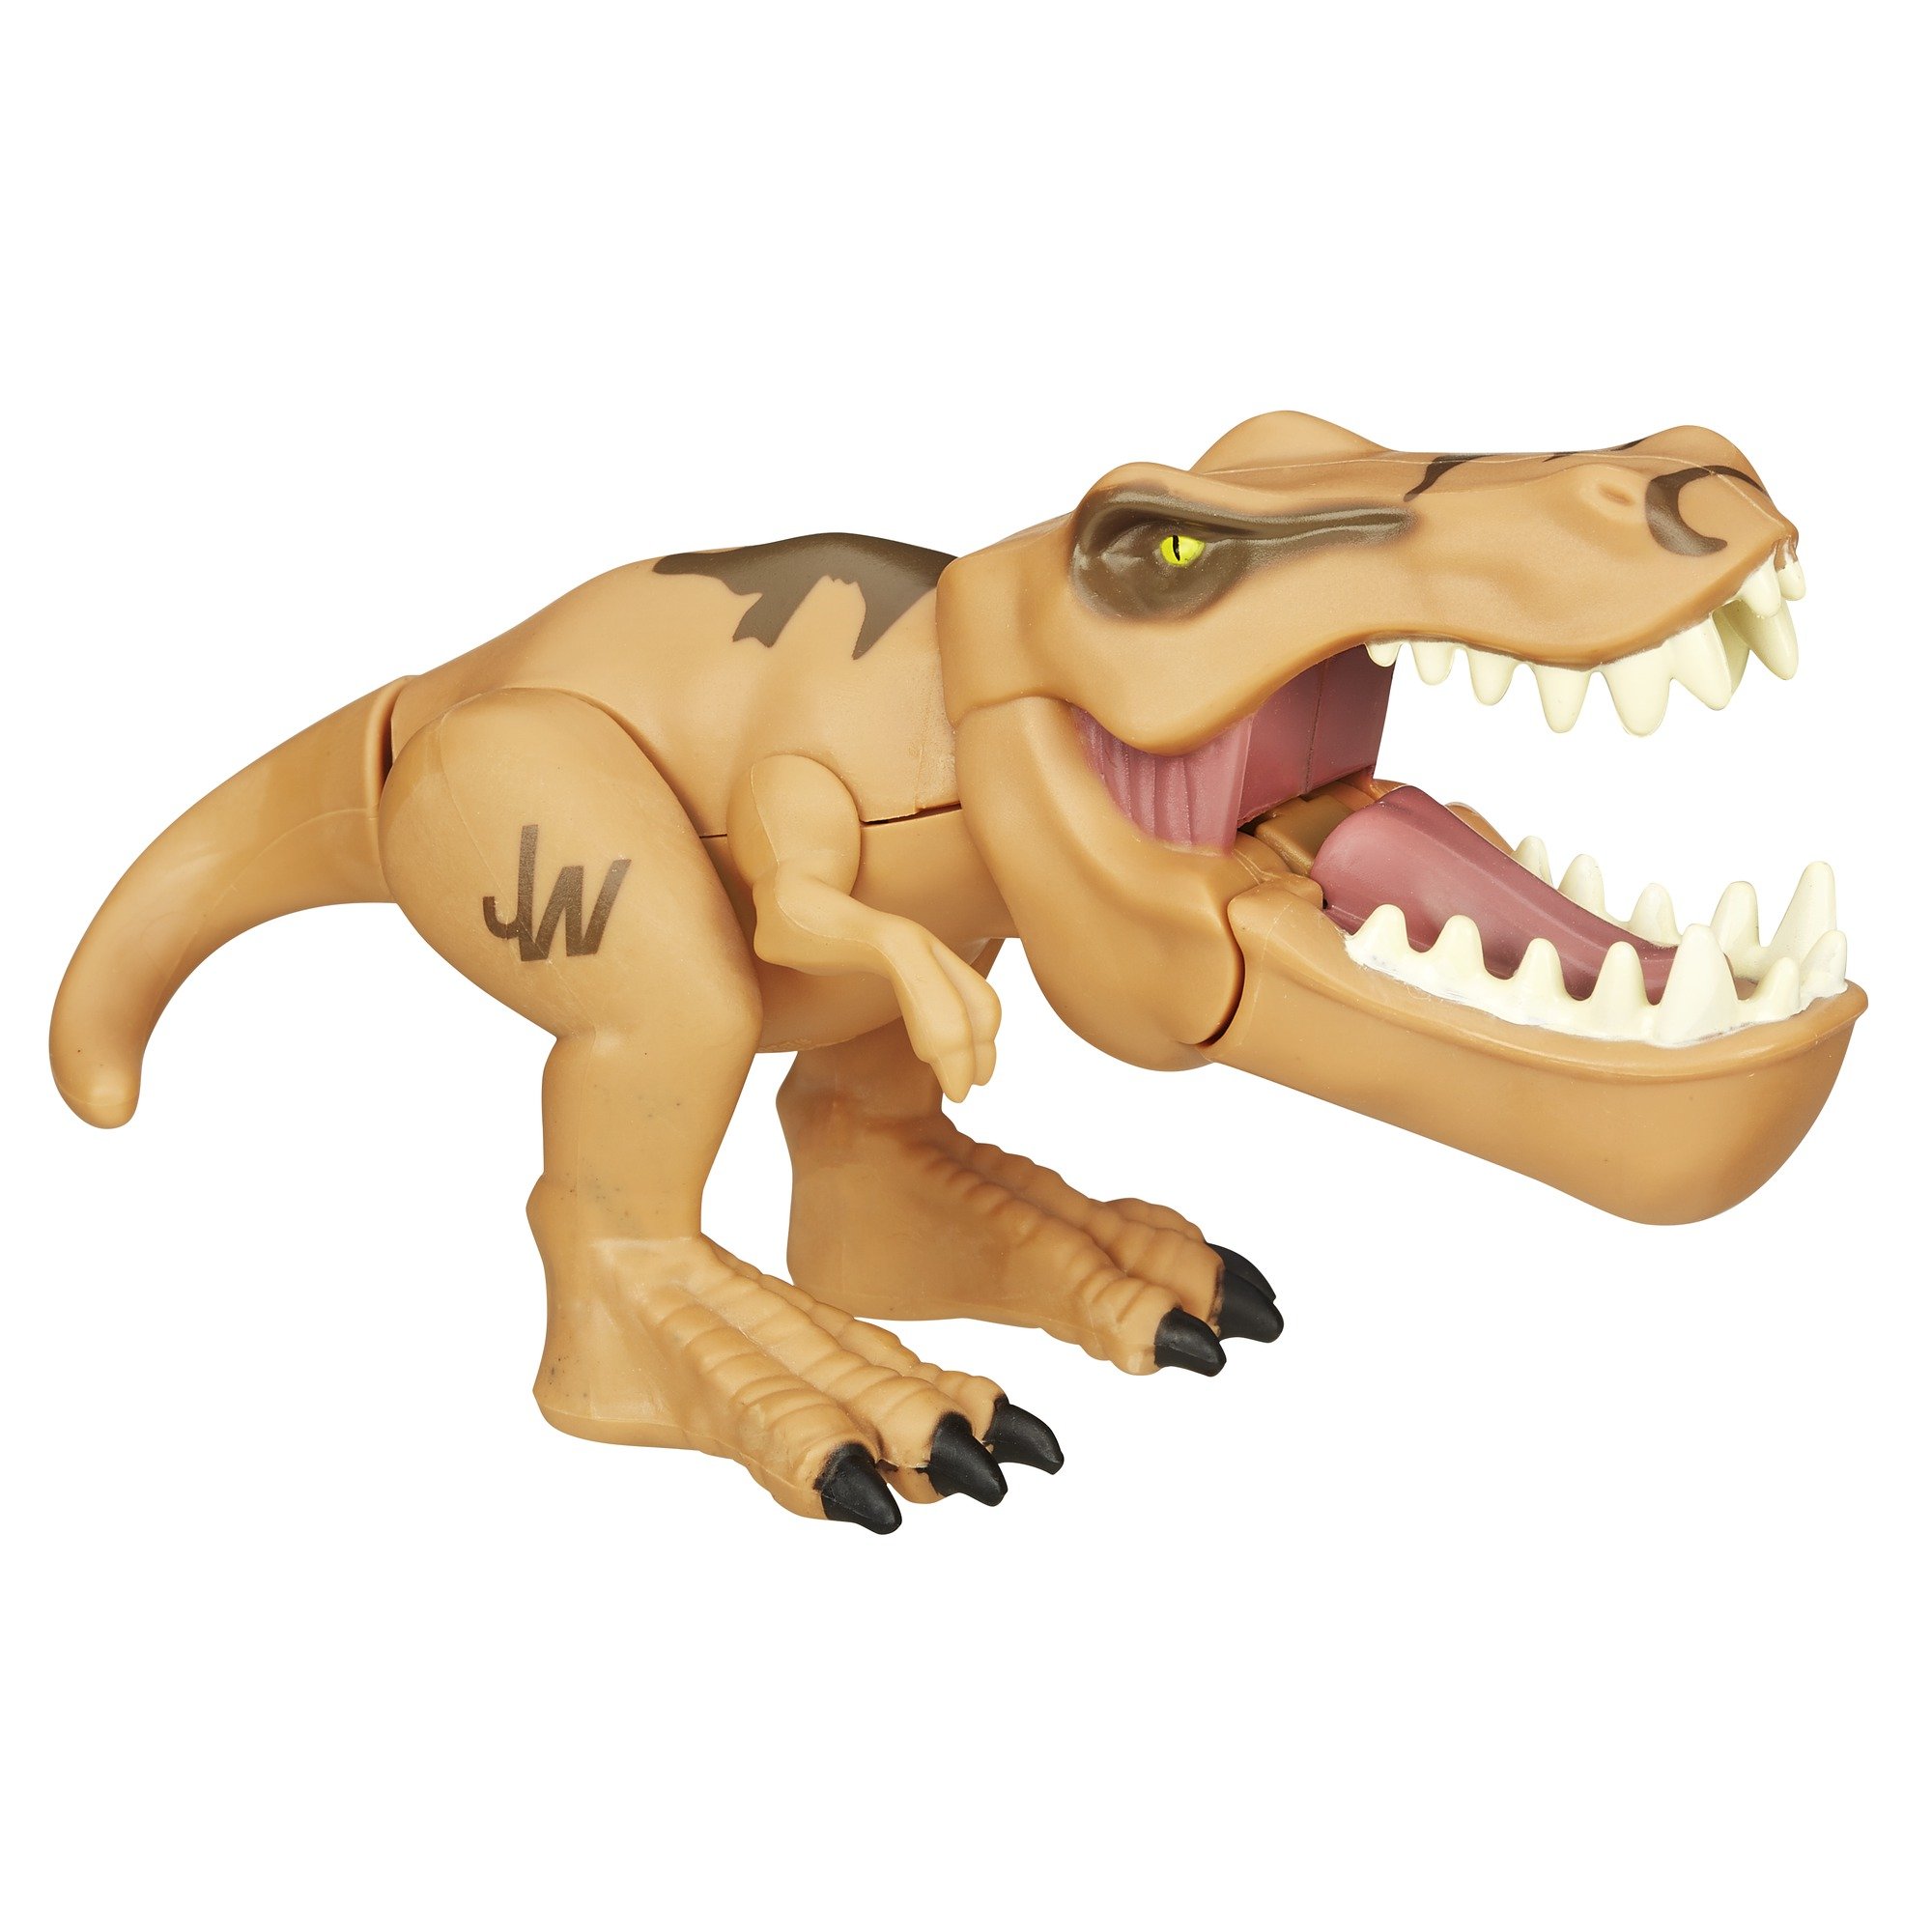 Мир динозавров игрушка. Игрушка Tyrannosaurus Rex детский мир. Игрушка Тиранозавр рекс Jurassic World. Тирекс игрушка мир Юрского периода. Игрушки динозавры мир Юрского периода Тиранозавр.